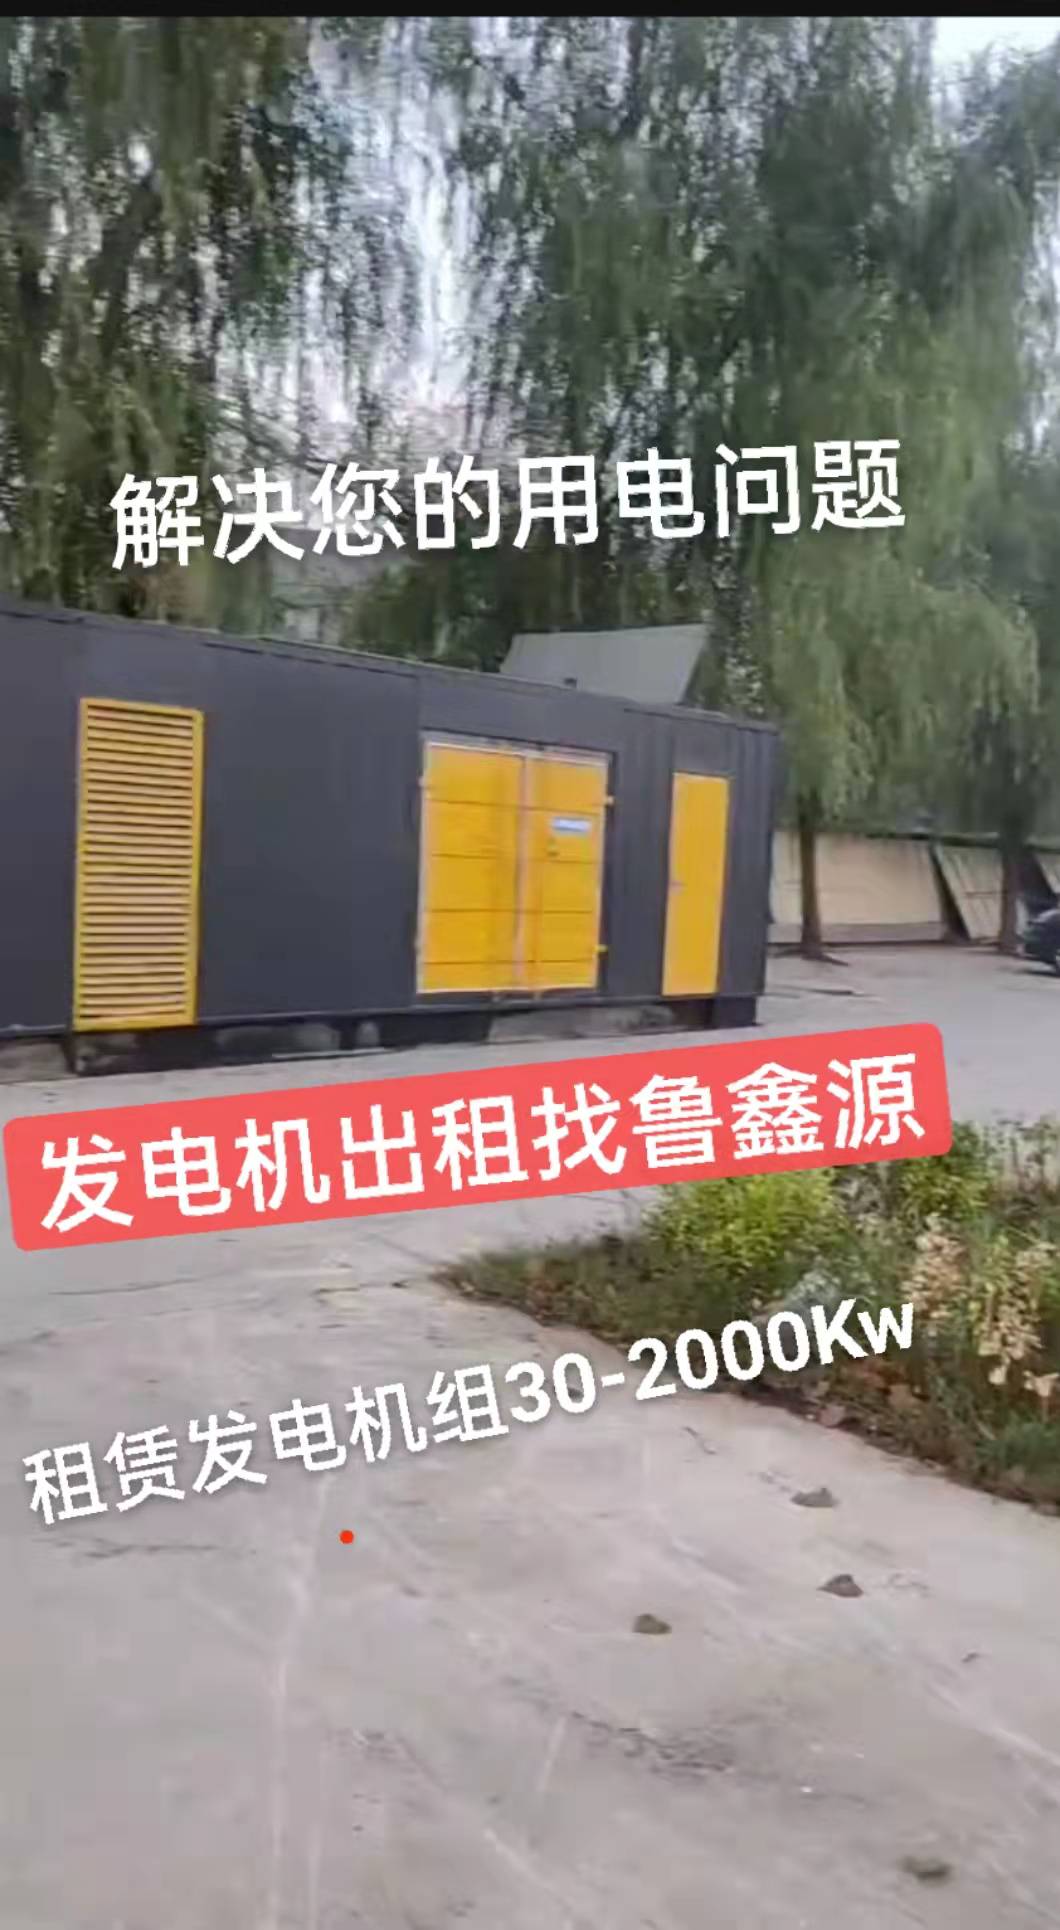 南京1000kw静音发电机供应 低油耗